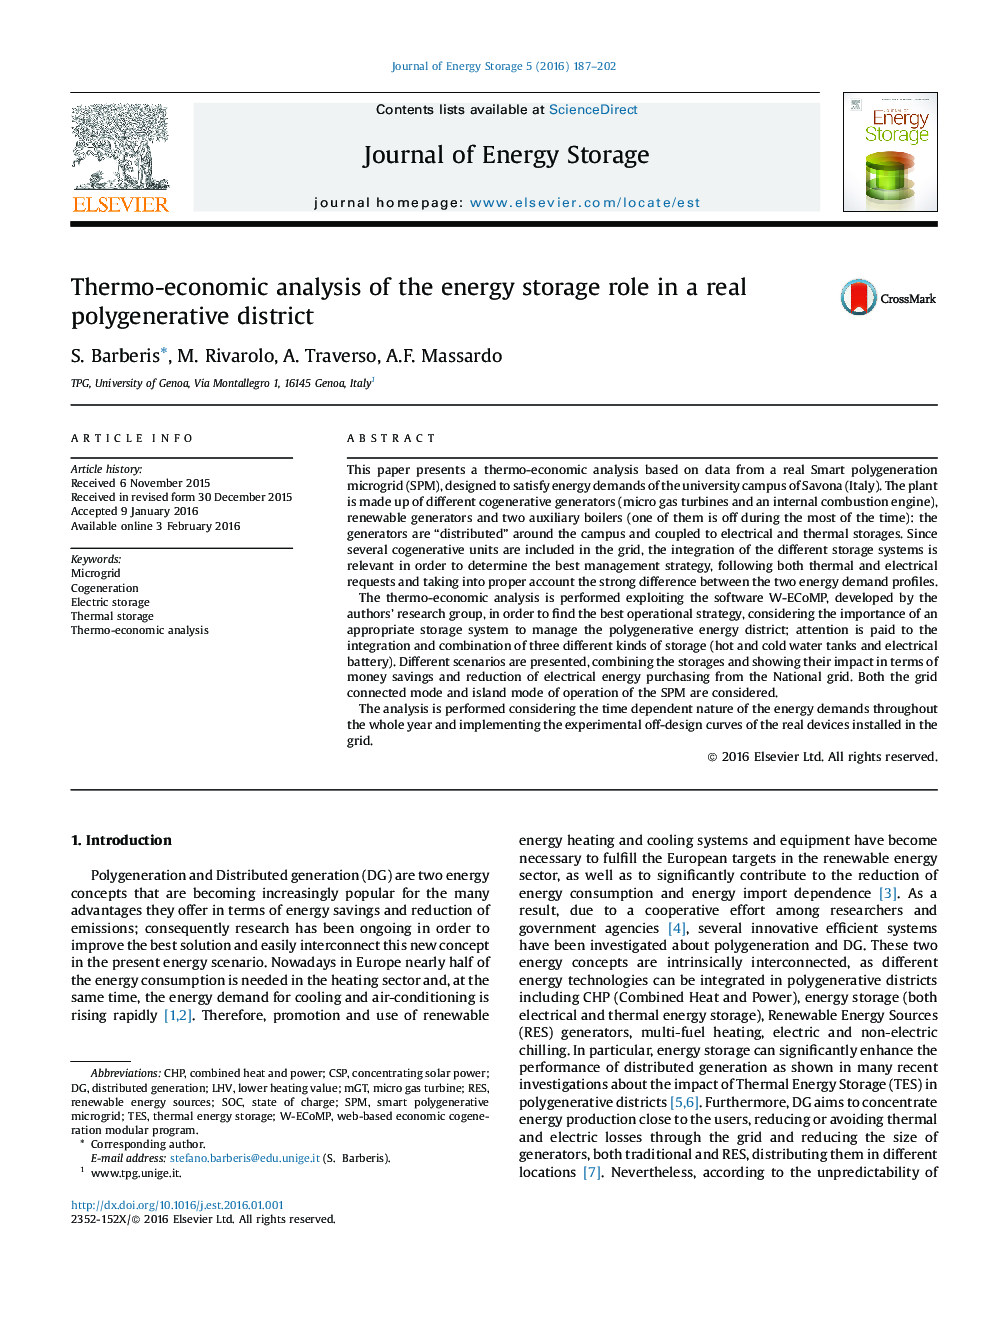 تجزیه و تحلیل حرارتی اقتصادی نقش ذخیره سازی انرژی در یک منطقه واقعی چندتایی 